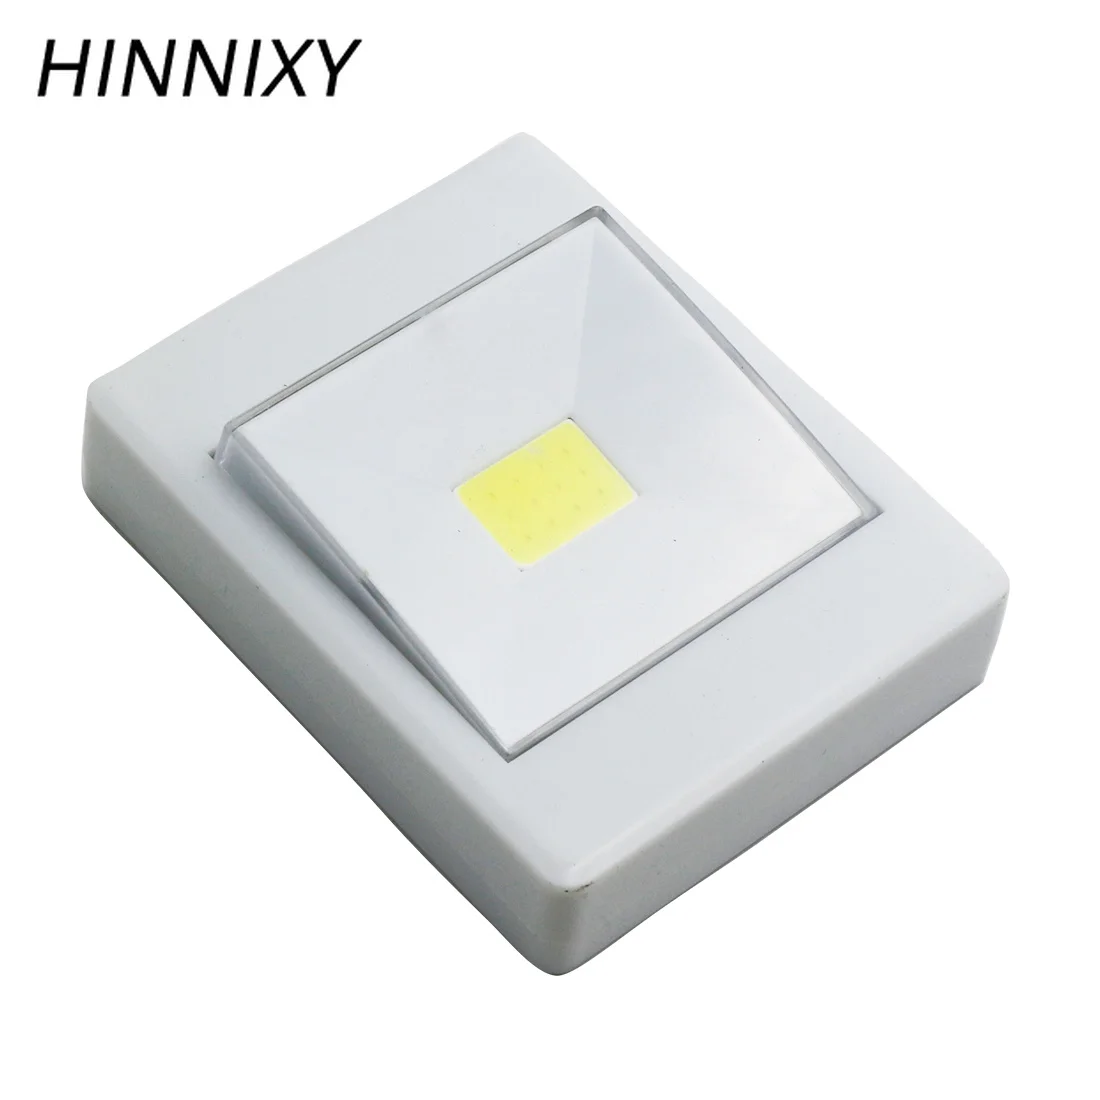 Hinnixy светодиодный LED 6 в настенный светильник аварийный ночник беспроводной переключатель освещение супер яркий холодный белый батарея